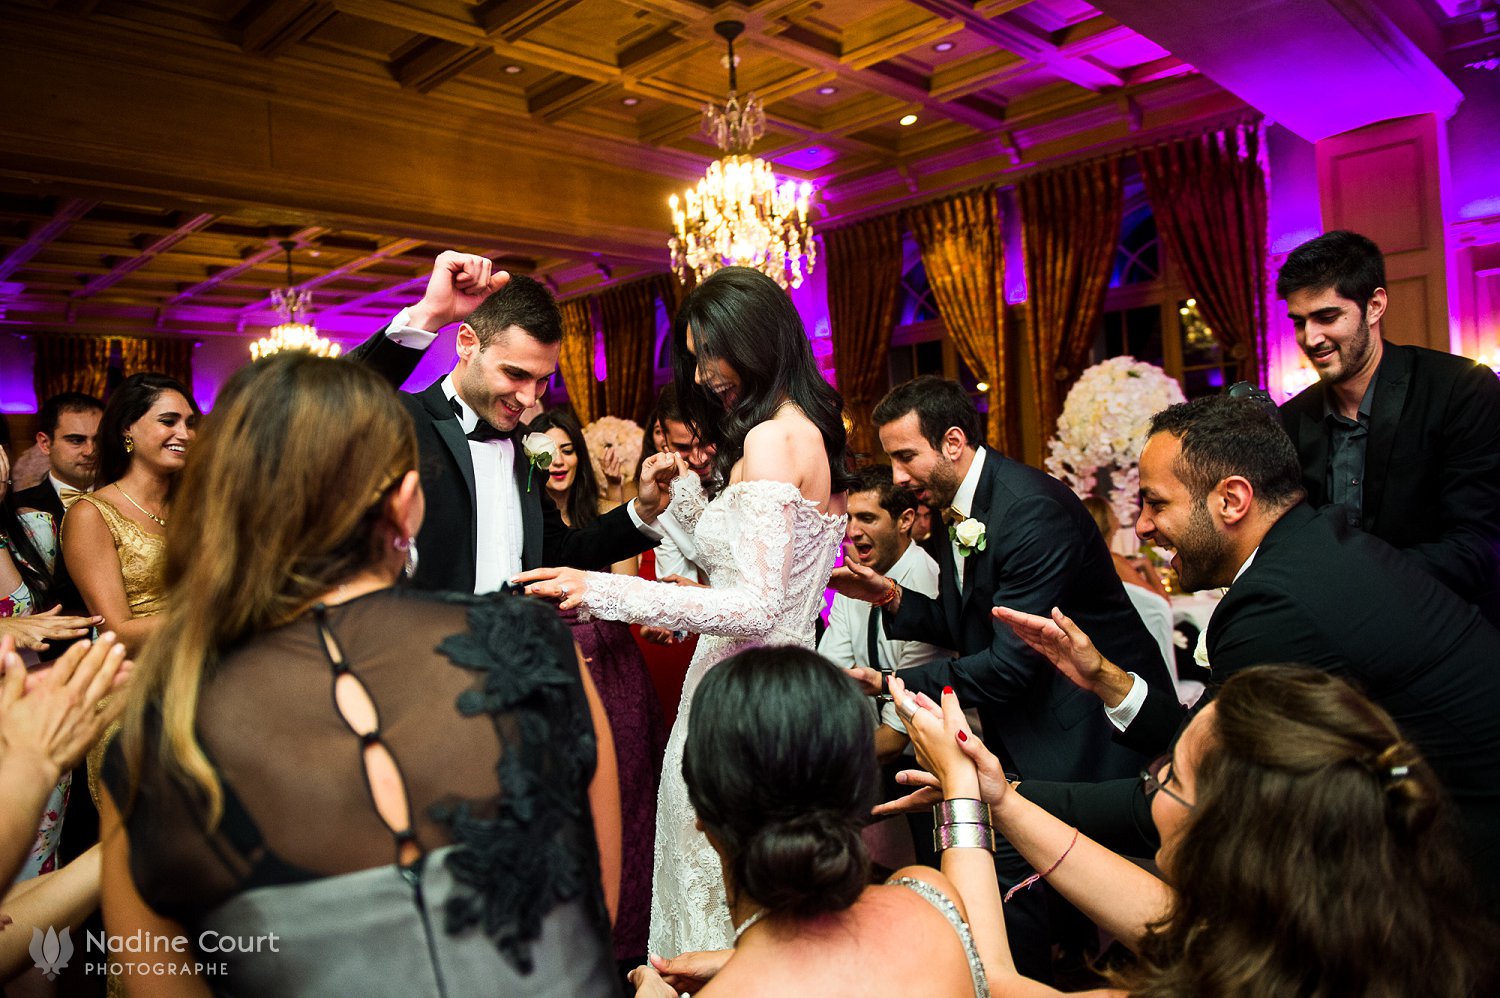 Mariage au Palace de Gstaad - wedding Gstaad Palace -guests on dancefloor - invités et mariés sur la piste de danse